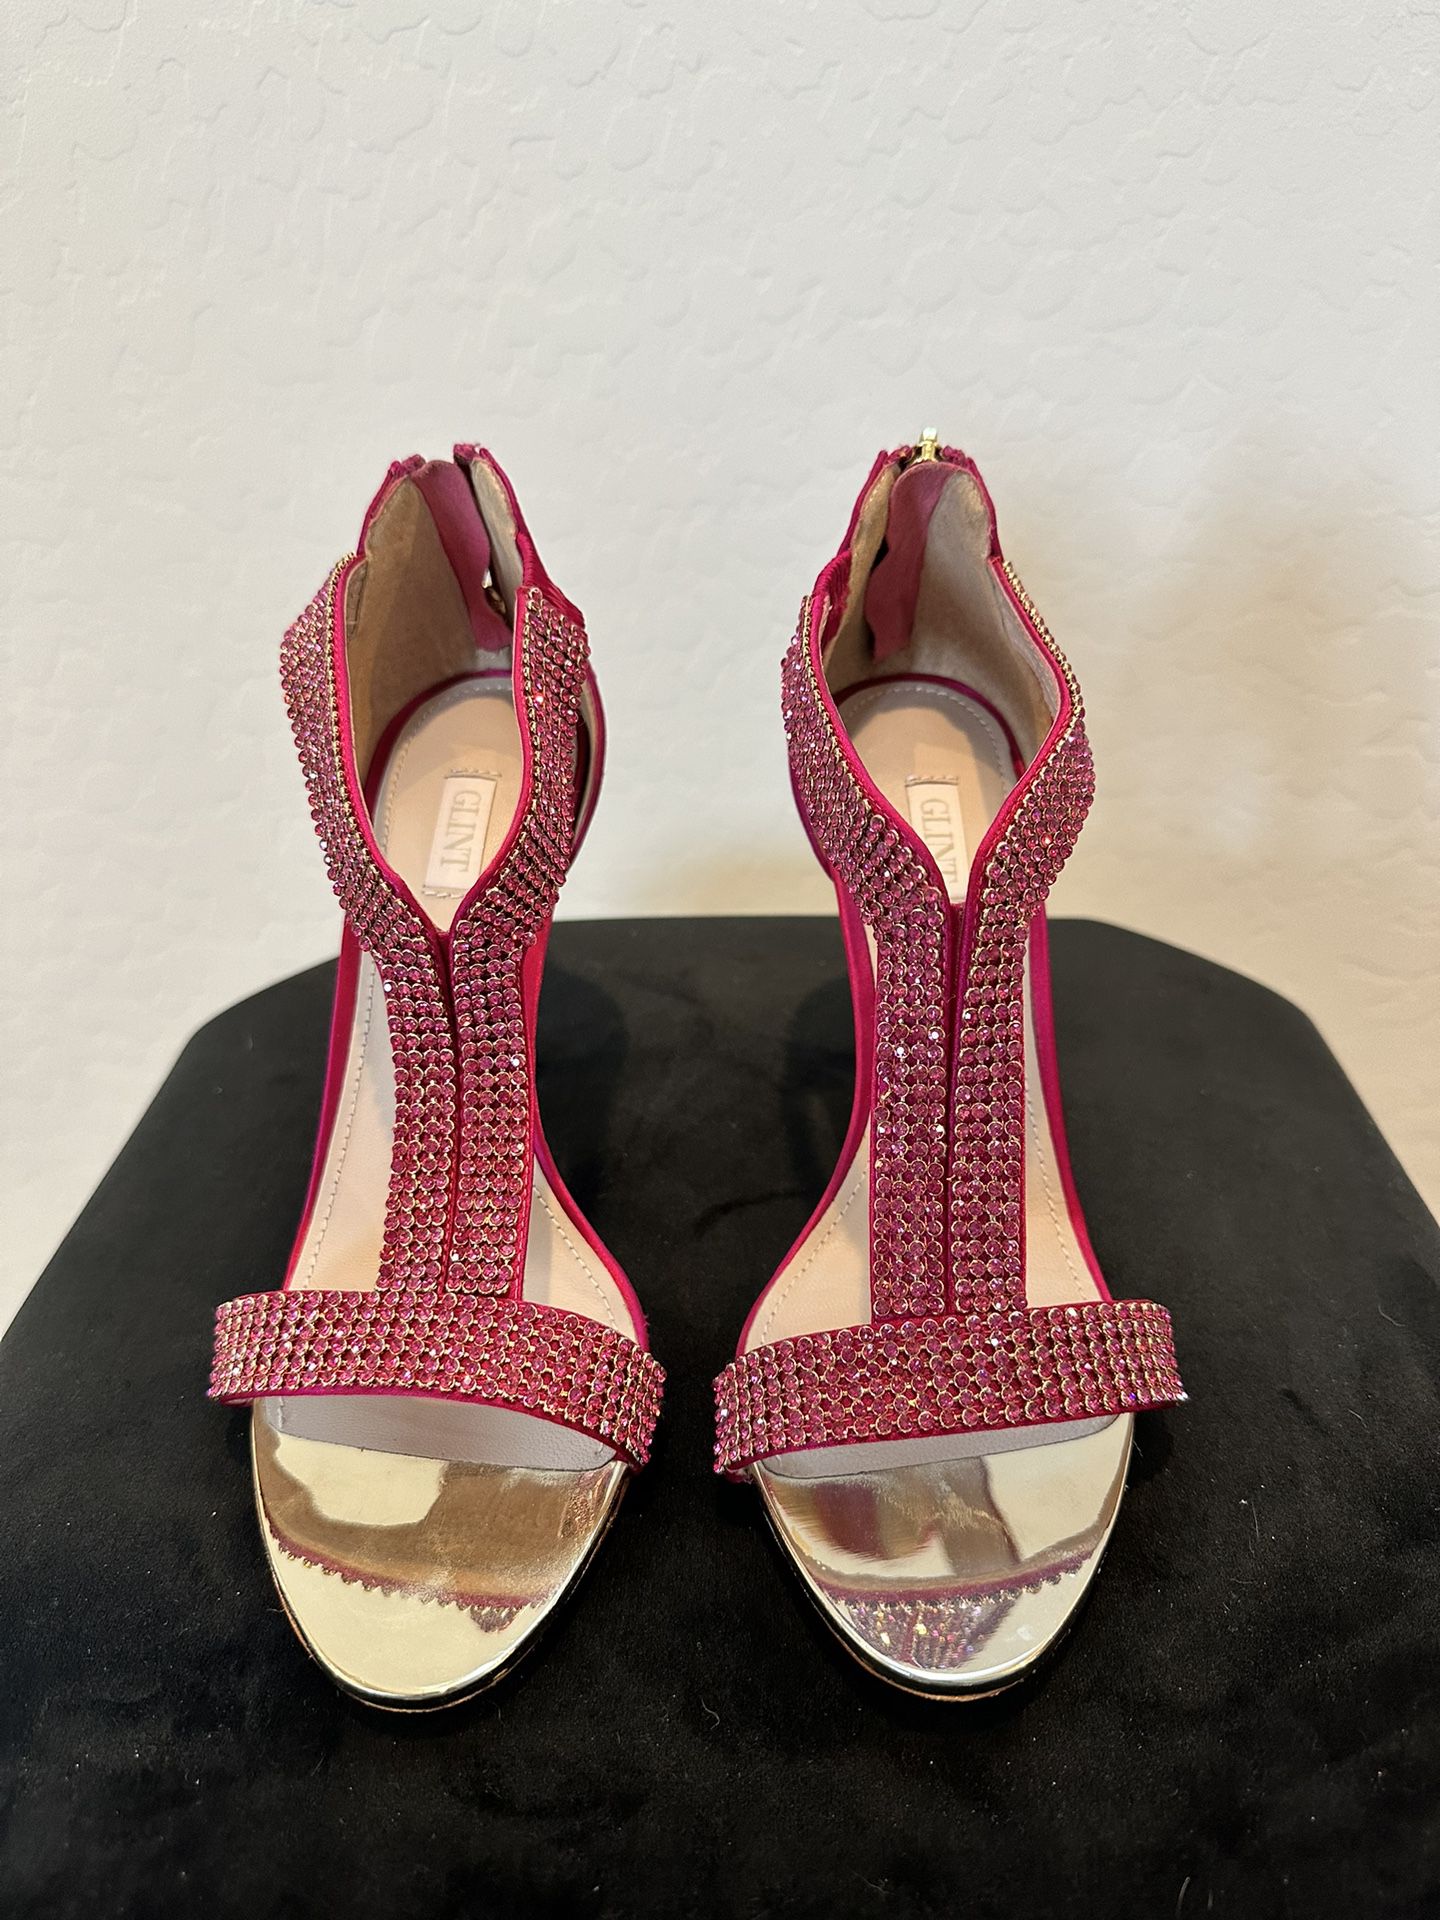 Hot Pink Heels With Sequins 